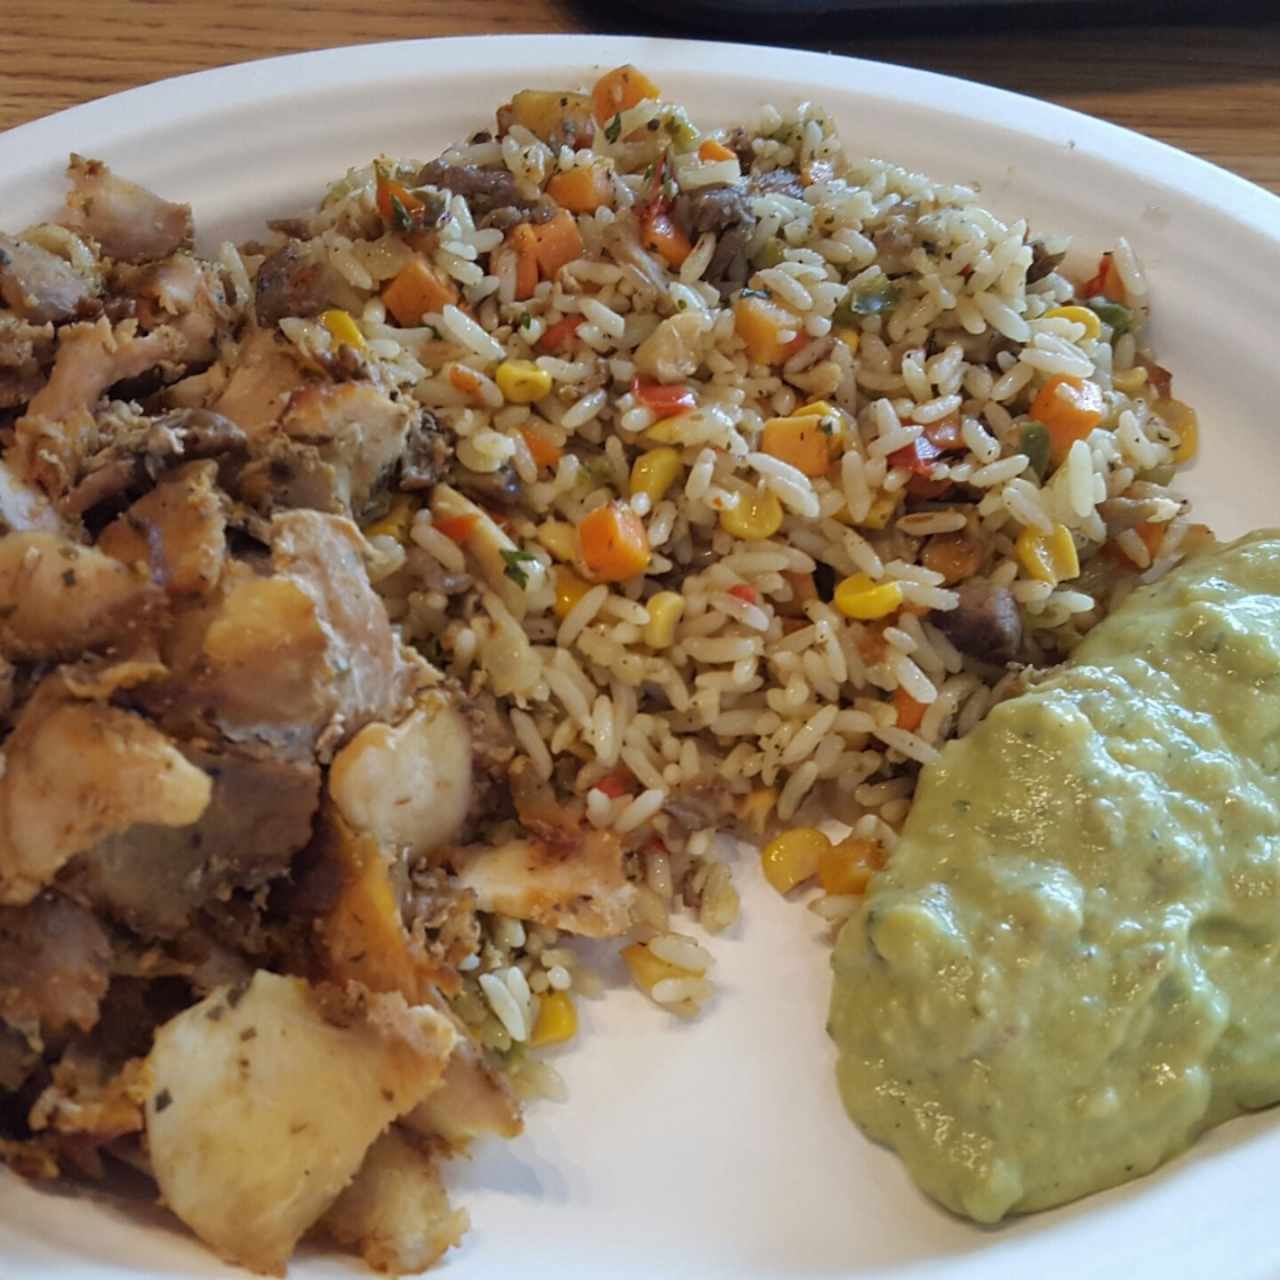 Yeero platters - Chicken yeero platters con arroz y guacamole